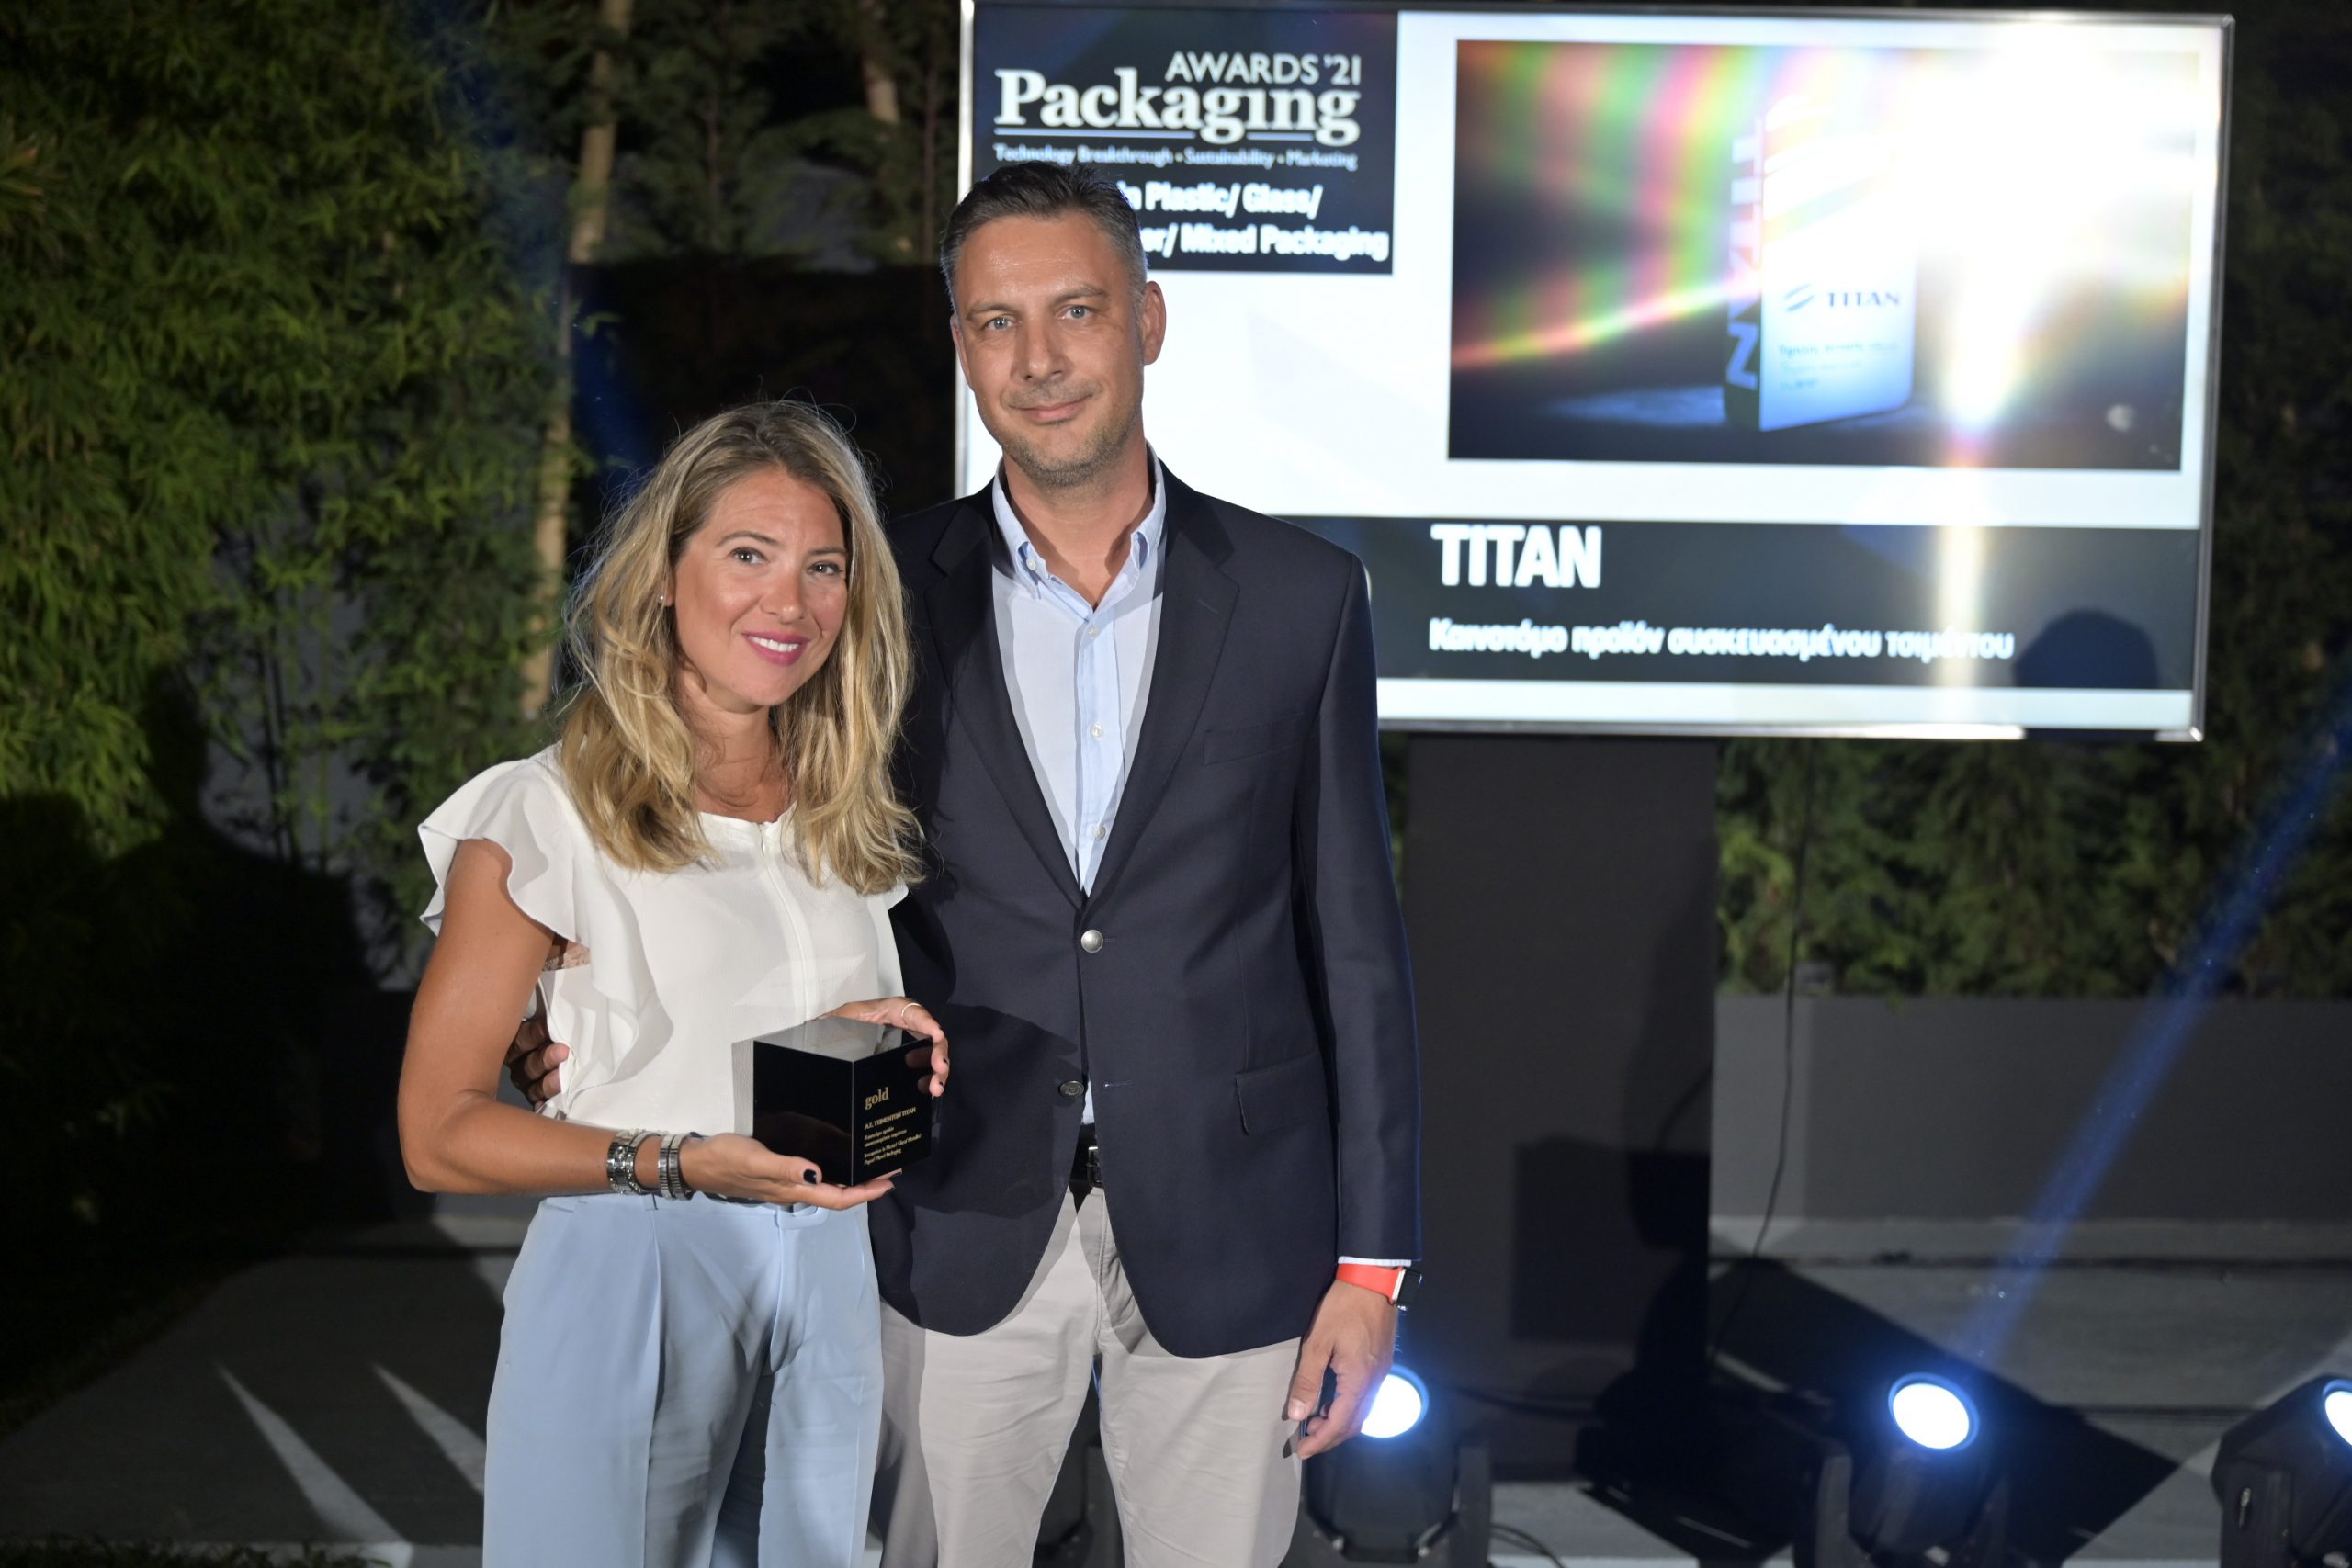 Τιτάν: Δύο χρυσά βραβεία στα Packaging Awards 2021